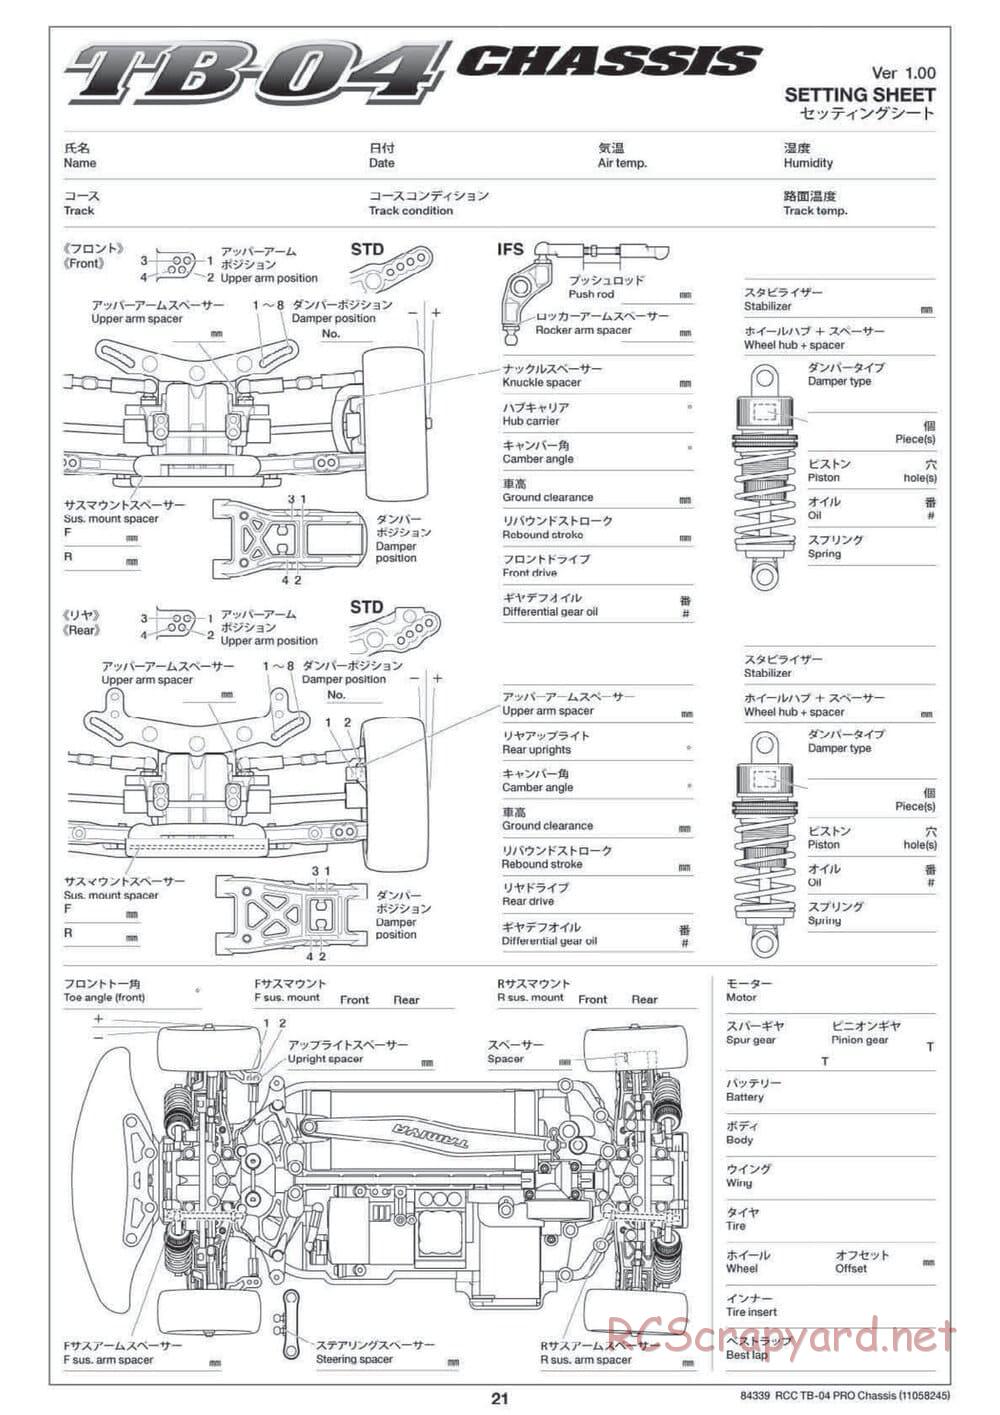 Tamiya - TB-04 Pro Chassis - Manual - Page 21